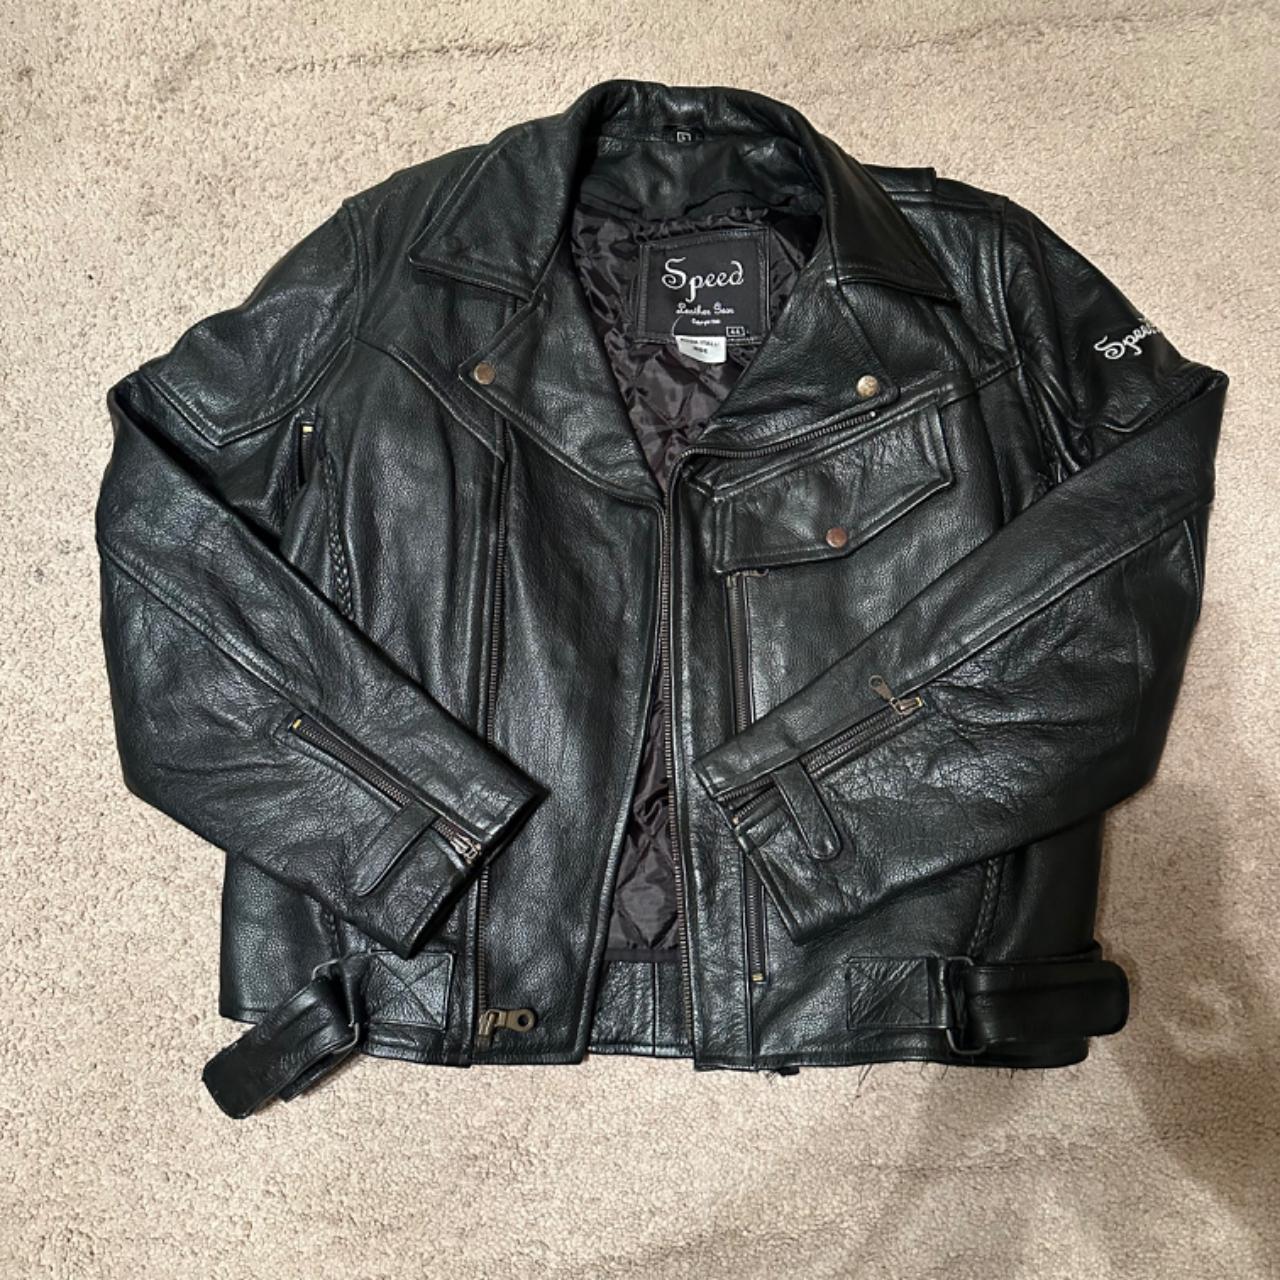 Mens Vintage Speed Gear Motorcycle leather jacket... - Depop